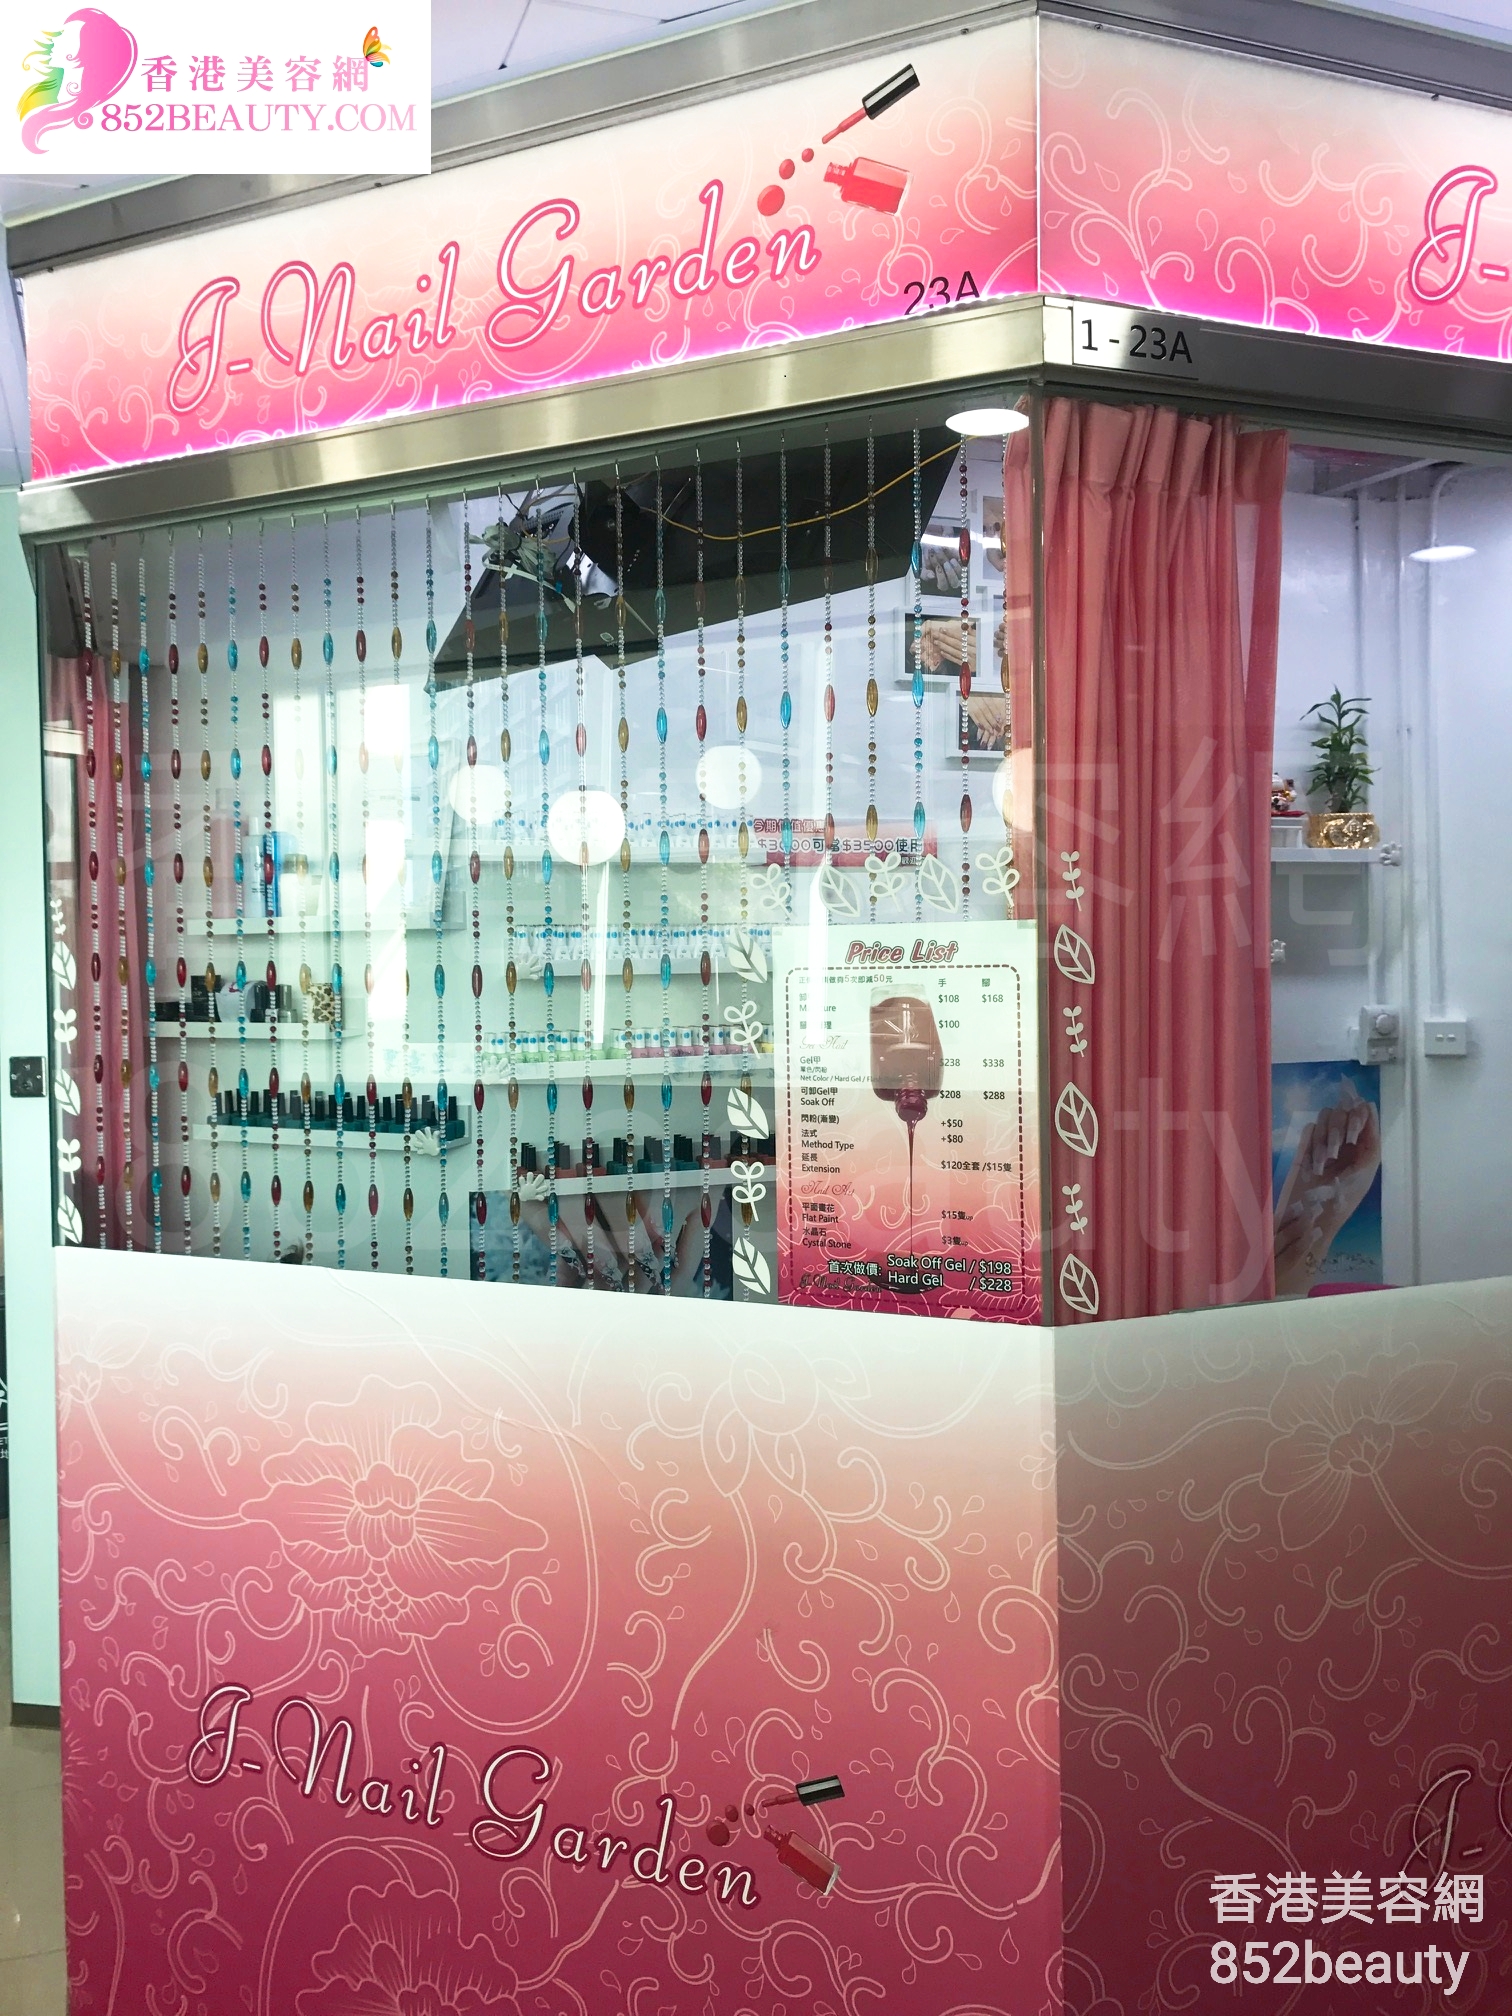 香港美容網 Hong Kong Beauty Salon 美容院 / 美容師: J-Nail Garden